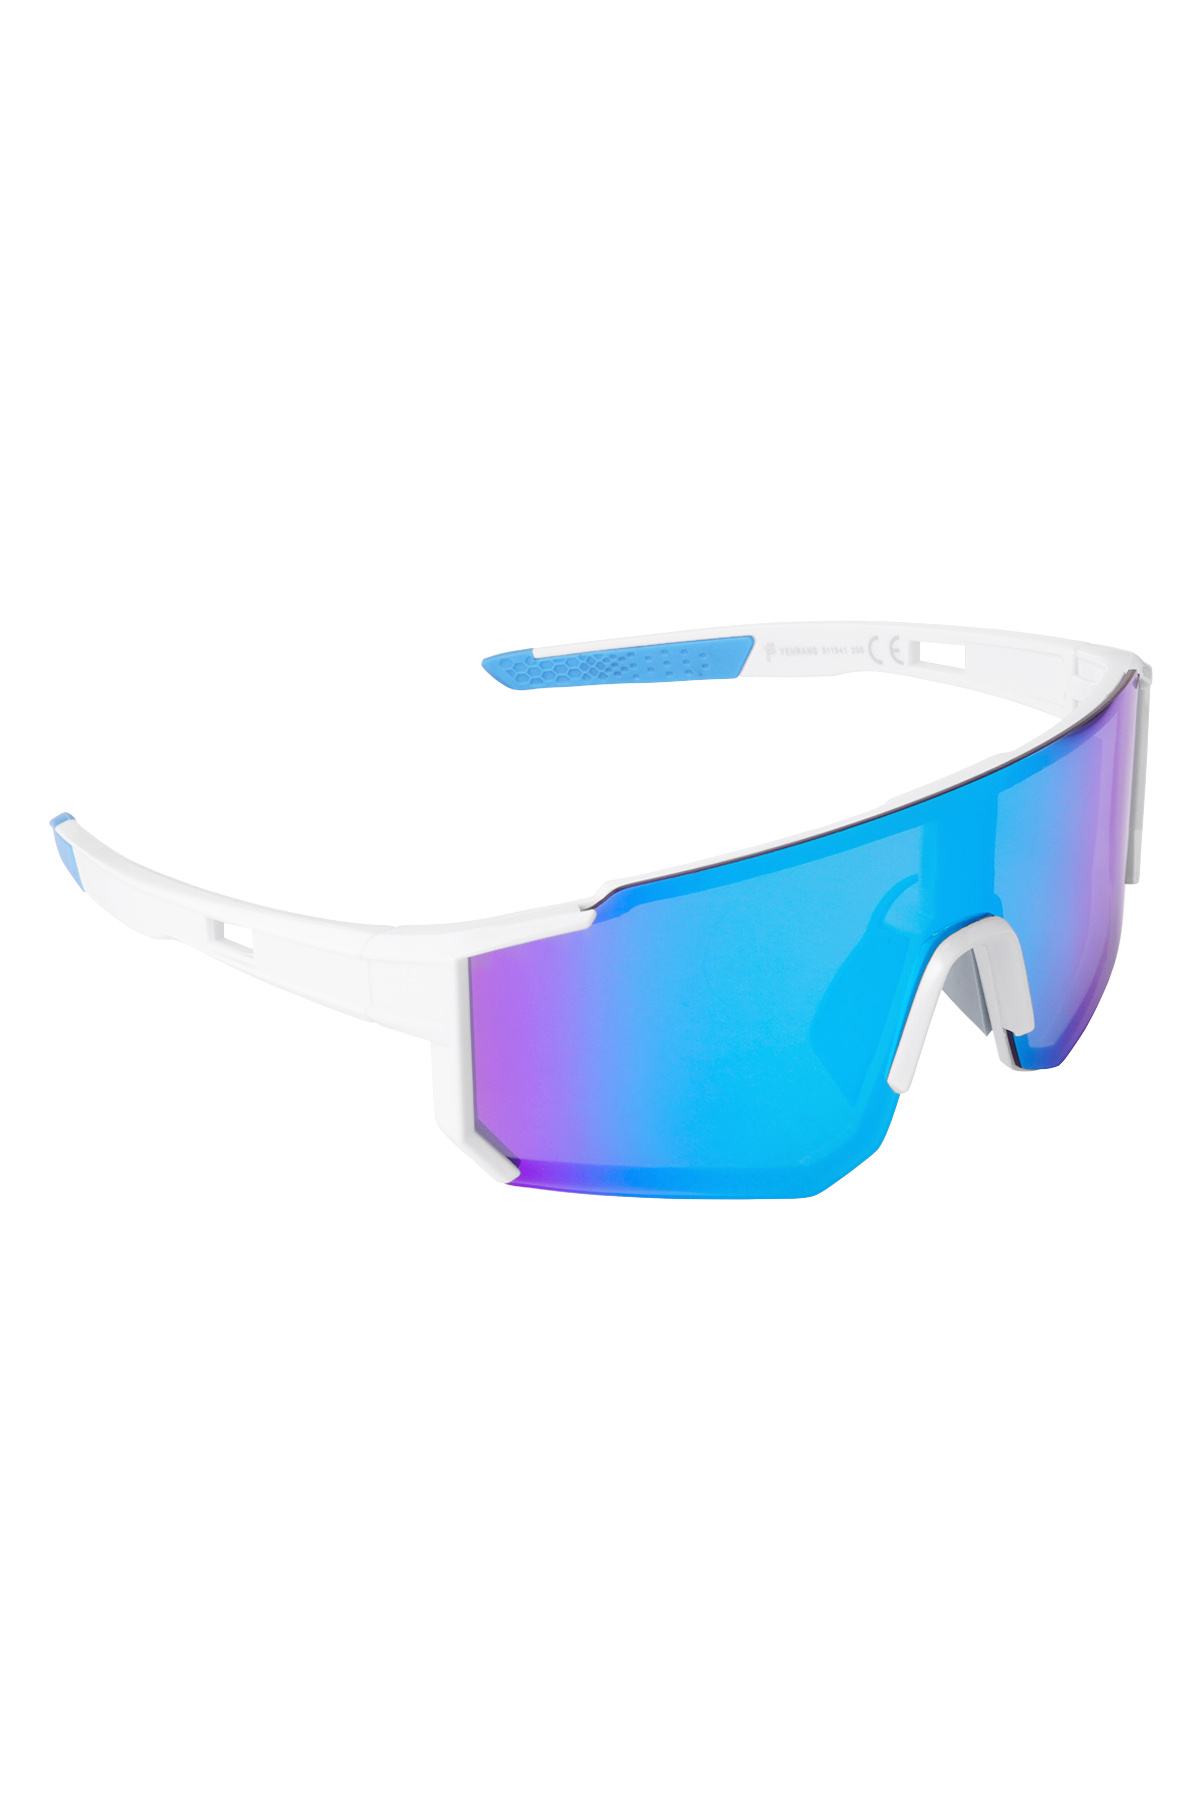 Sunglasses future - white/blue h5 